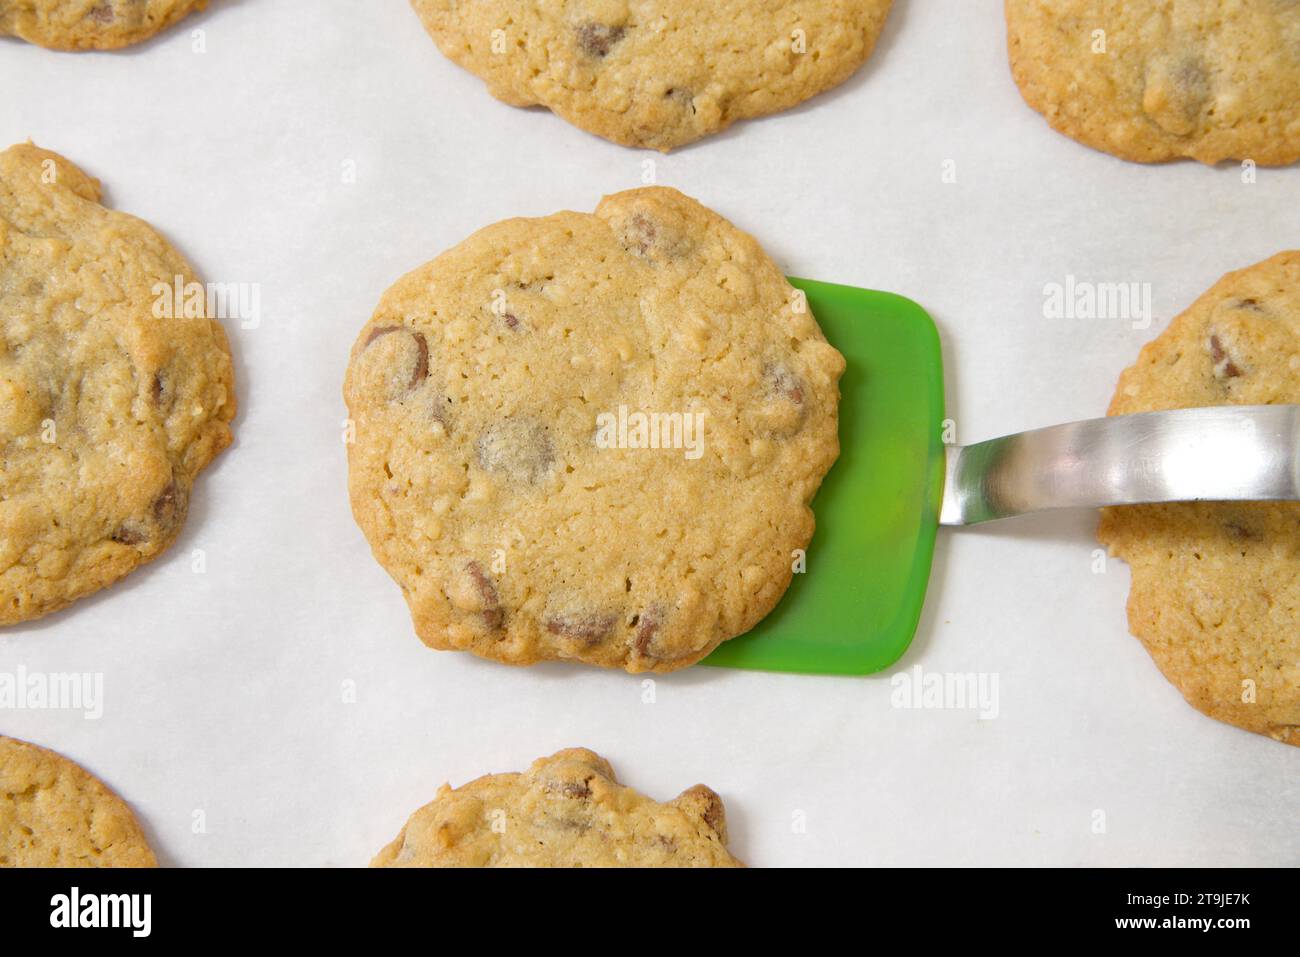 Reihen frisch gebackener Haferflocken-Schokoladen-Chip-Cookies auf Pergamentpapier, grüner Silikonspachtel, der einen Keks vom Backblech hebt. Stockfoto